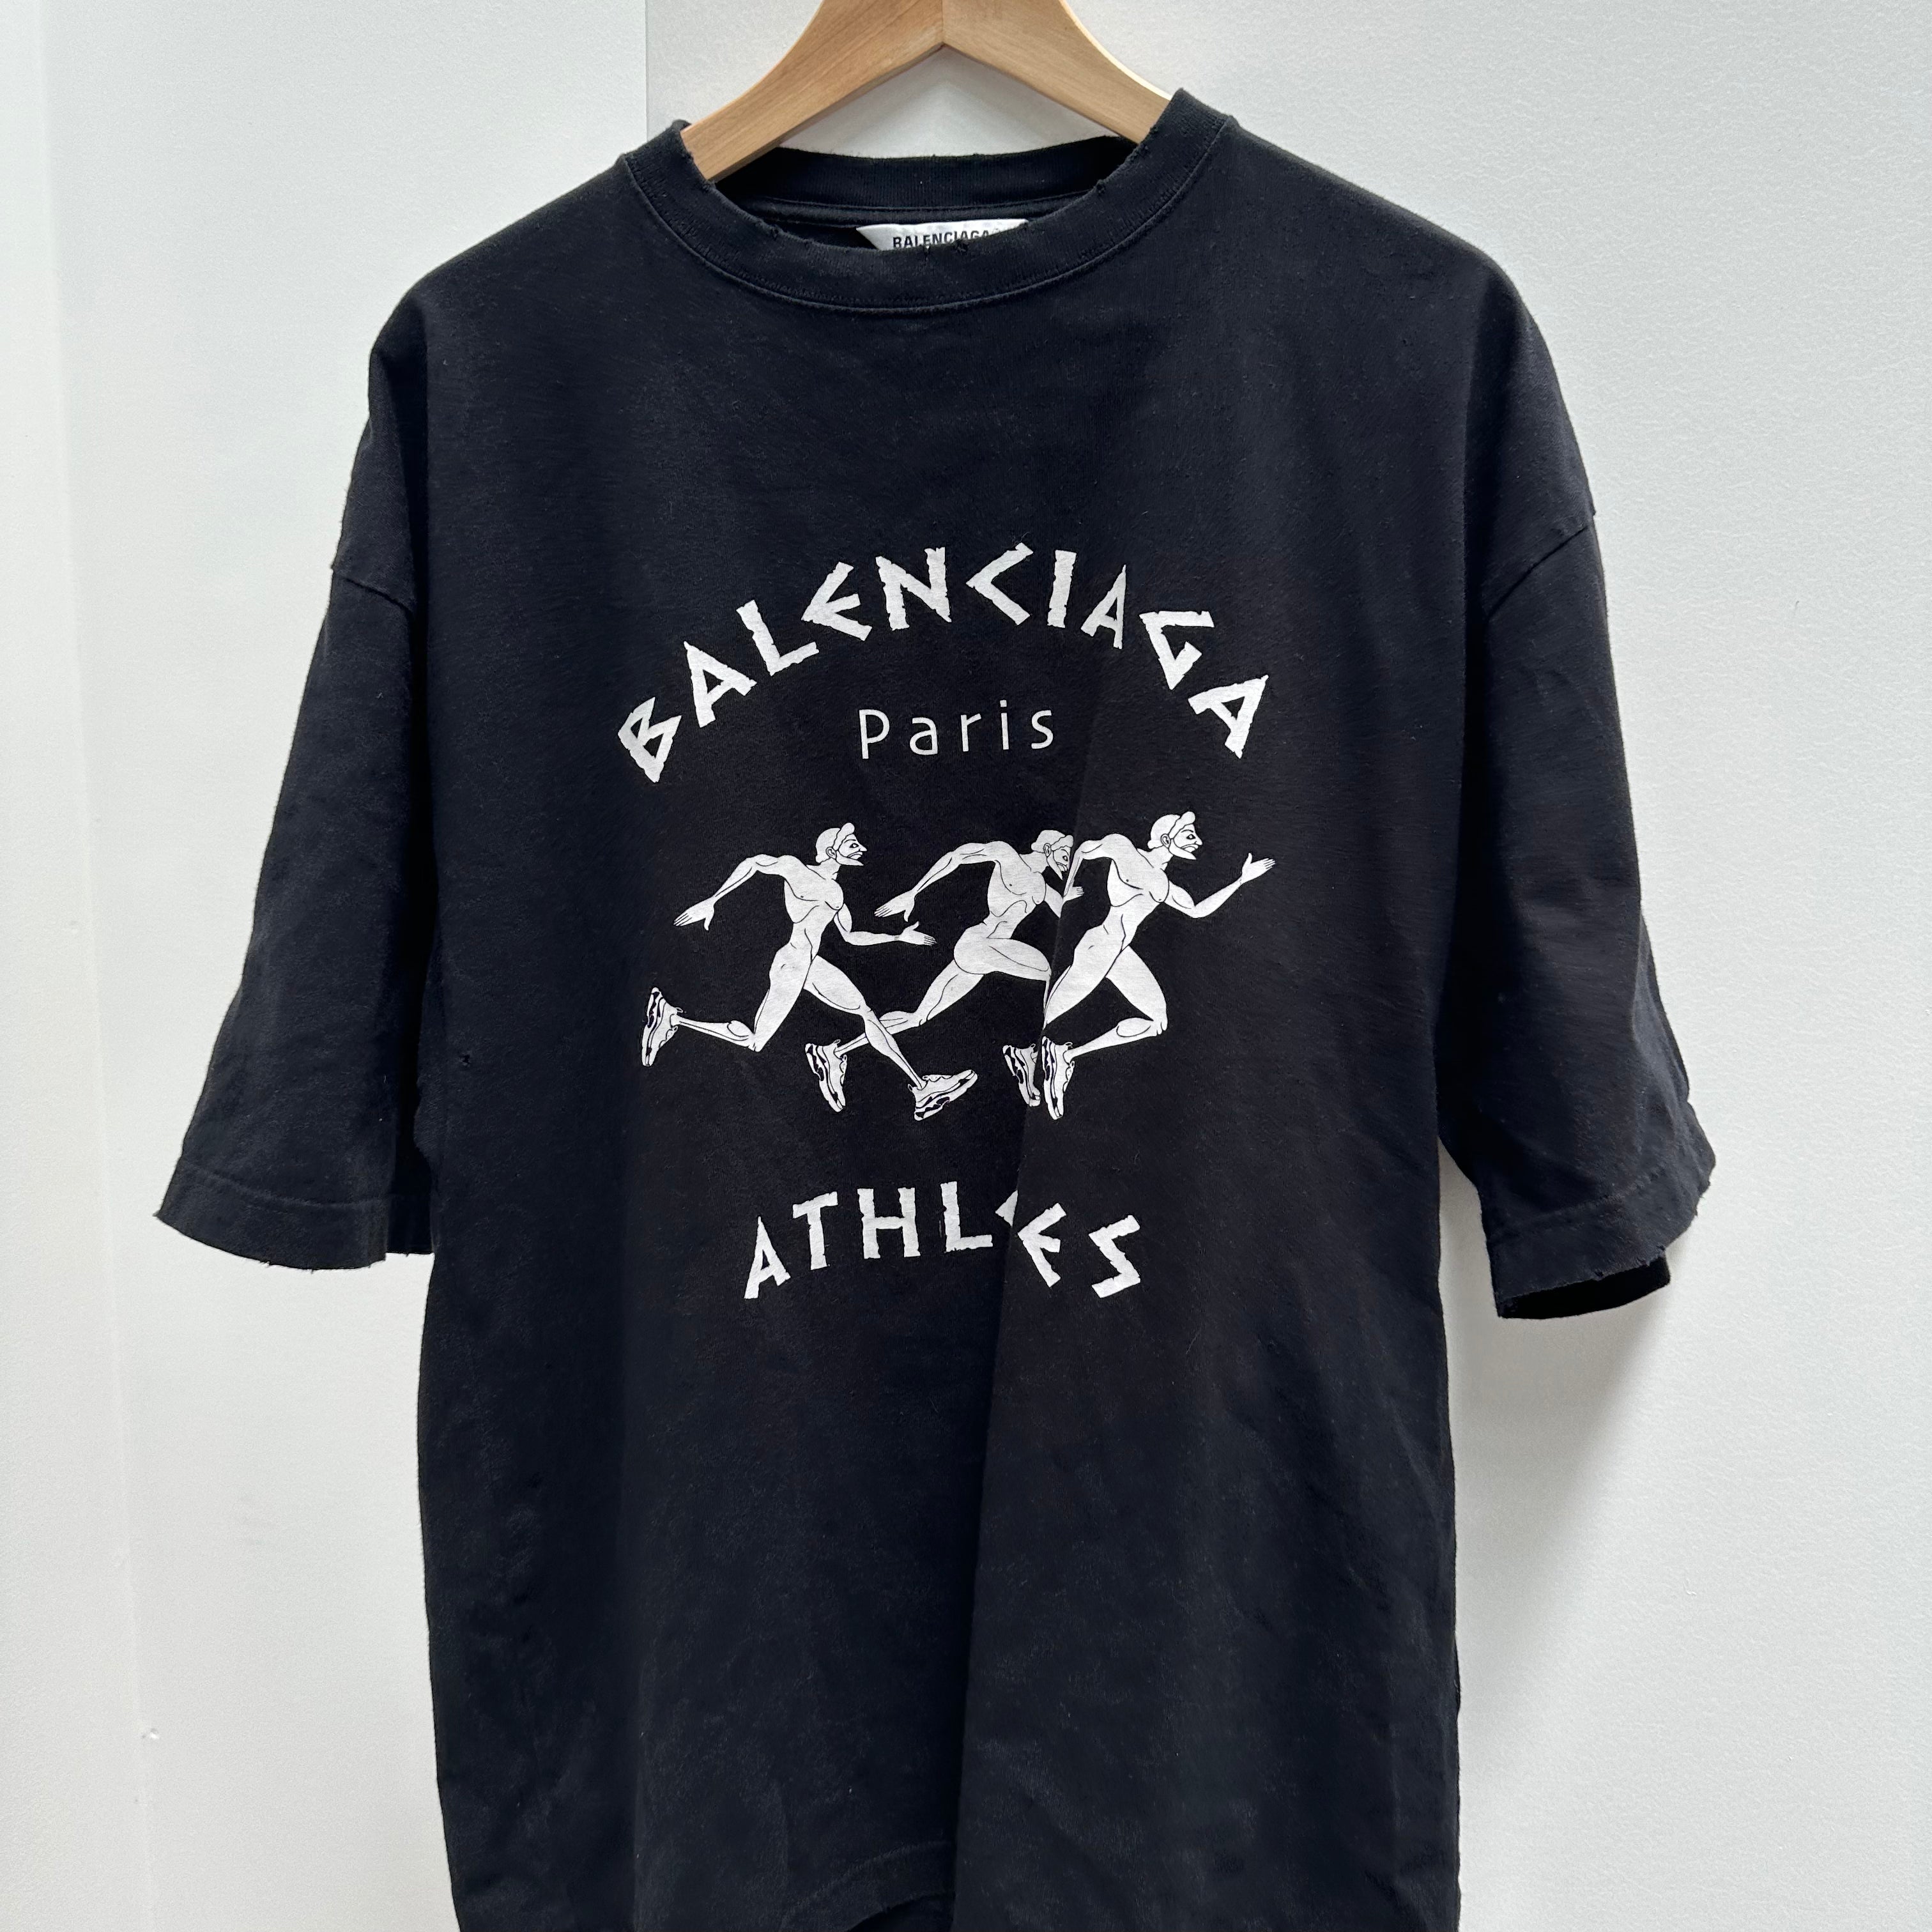 Balenciaga Athletes Oversized T-Shirt 'Black/White' (Fits M/ Large)